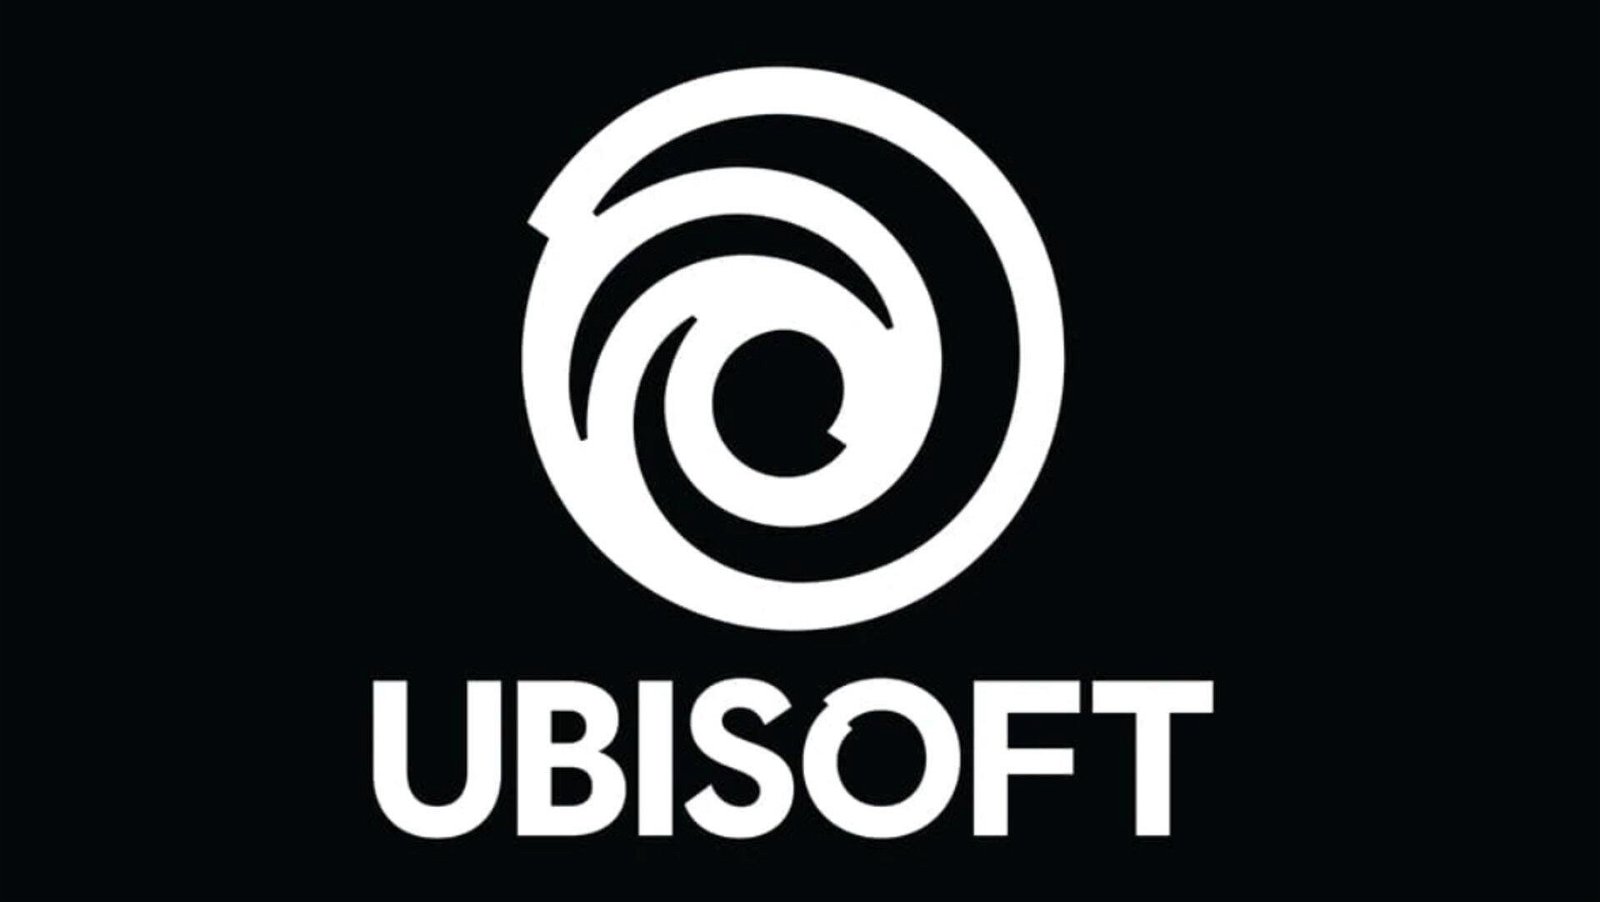 Ubisoft vi offre un nuovo gioco gratis per una settimana (ed è un big)